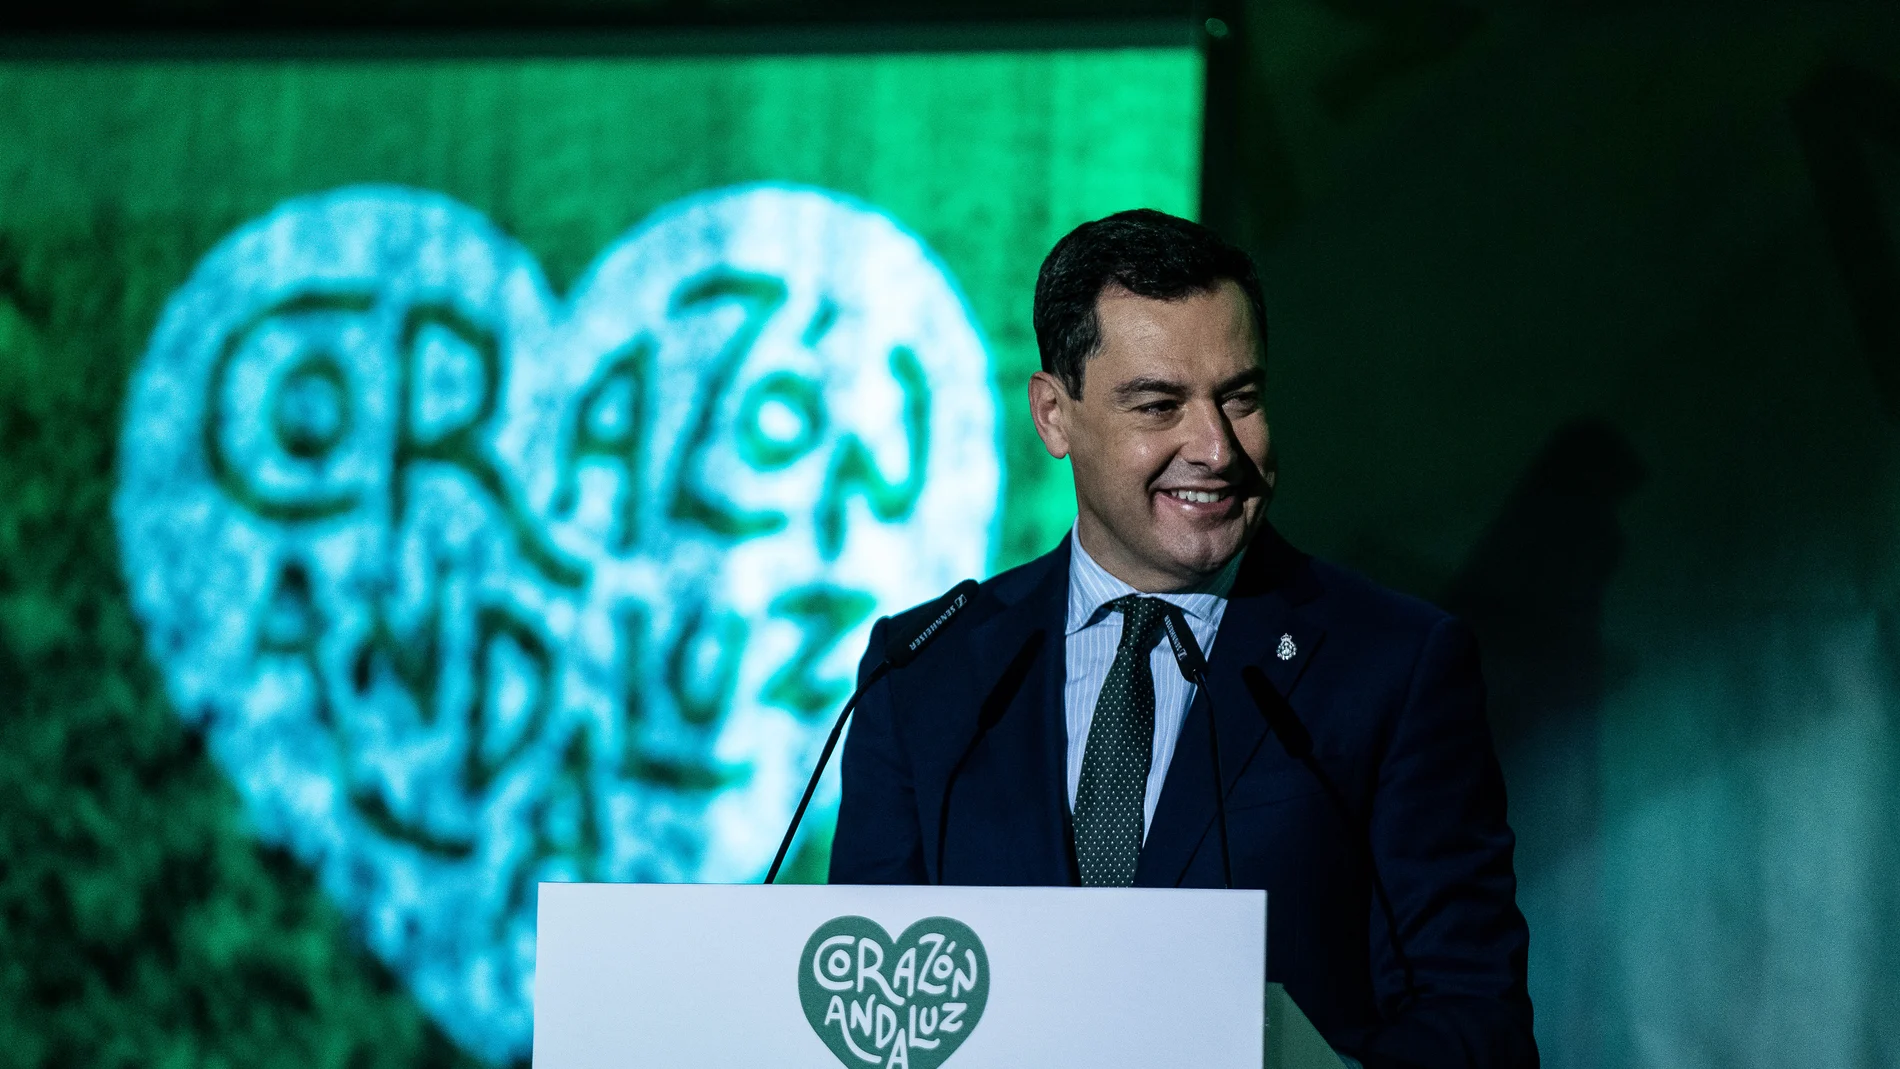 Moreno en la presentación de la campaña "Corazón andaluz"